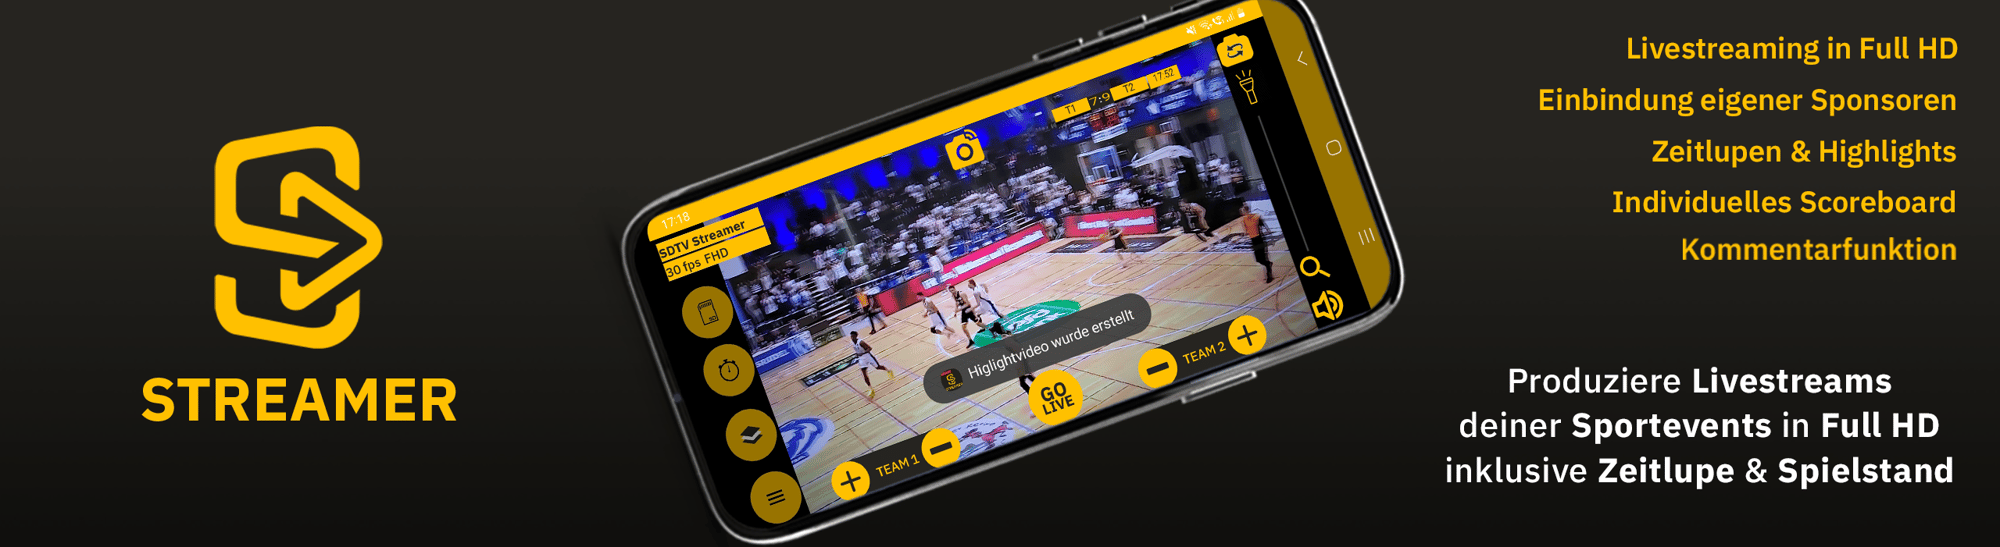 Die Sportdeutschland.TV Streamer-App ist zu sehen. Produziere Livestreams deiner Sportevents in Full HD inklusive Zeitlupe und Spielstand.